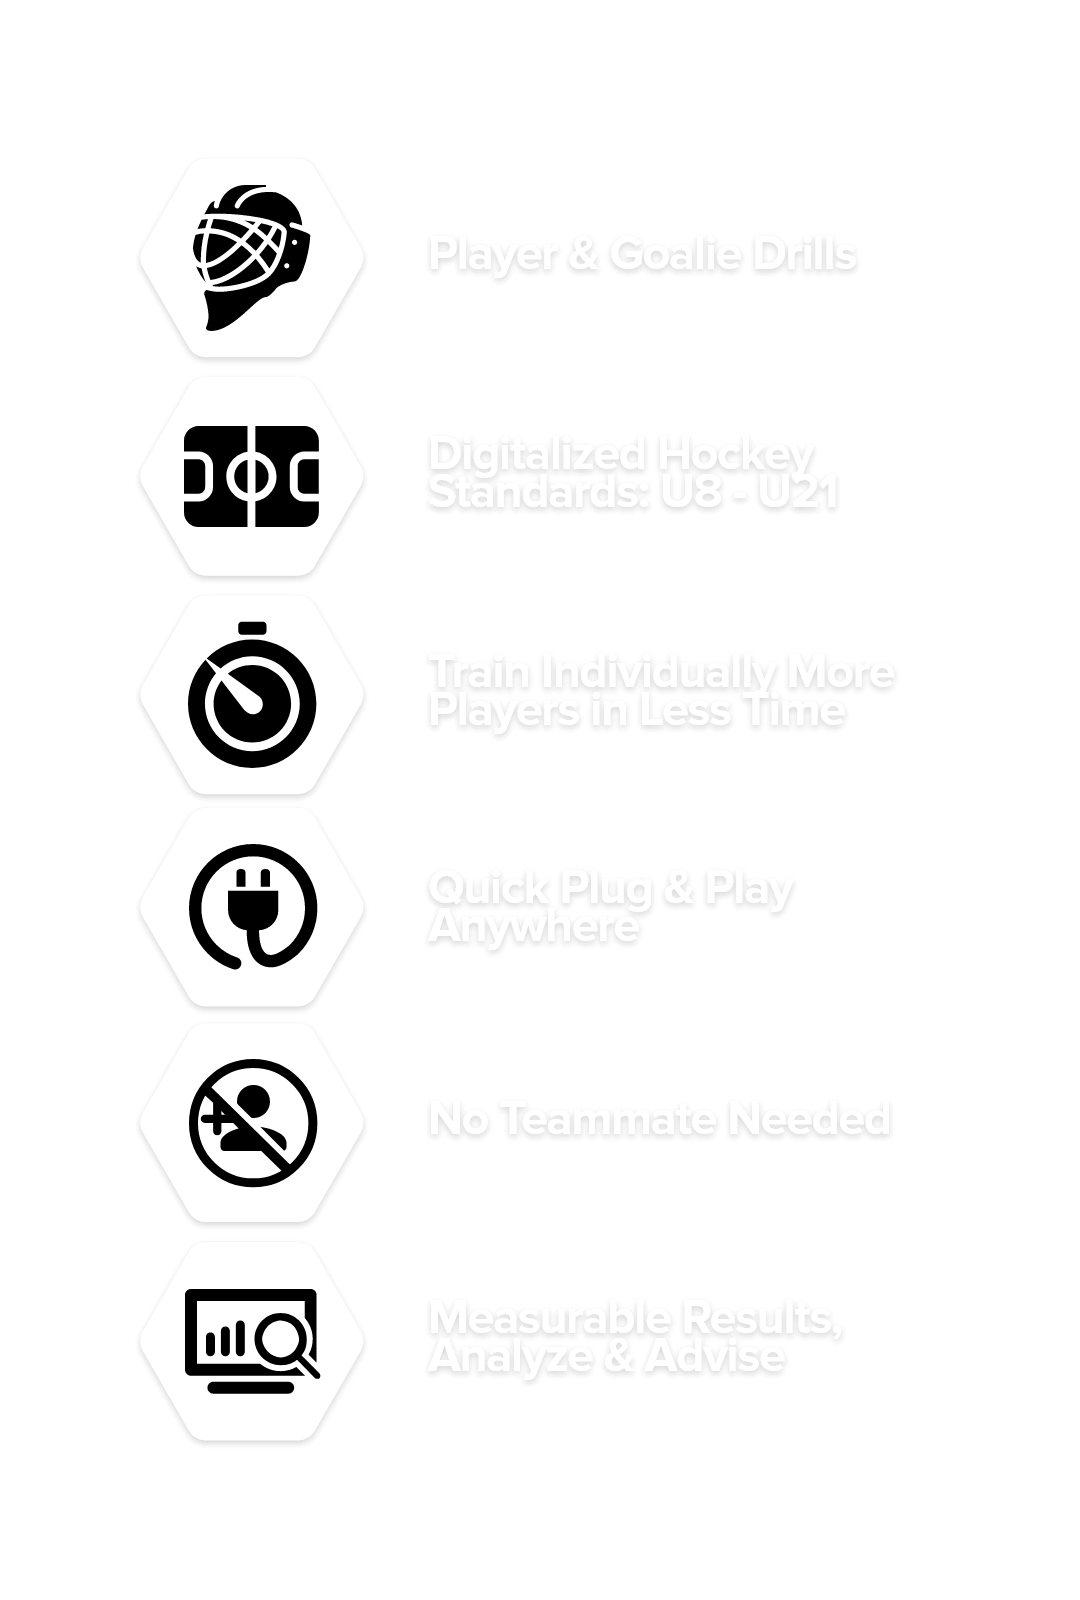 nito hockey benefits